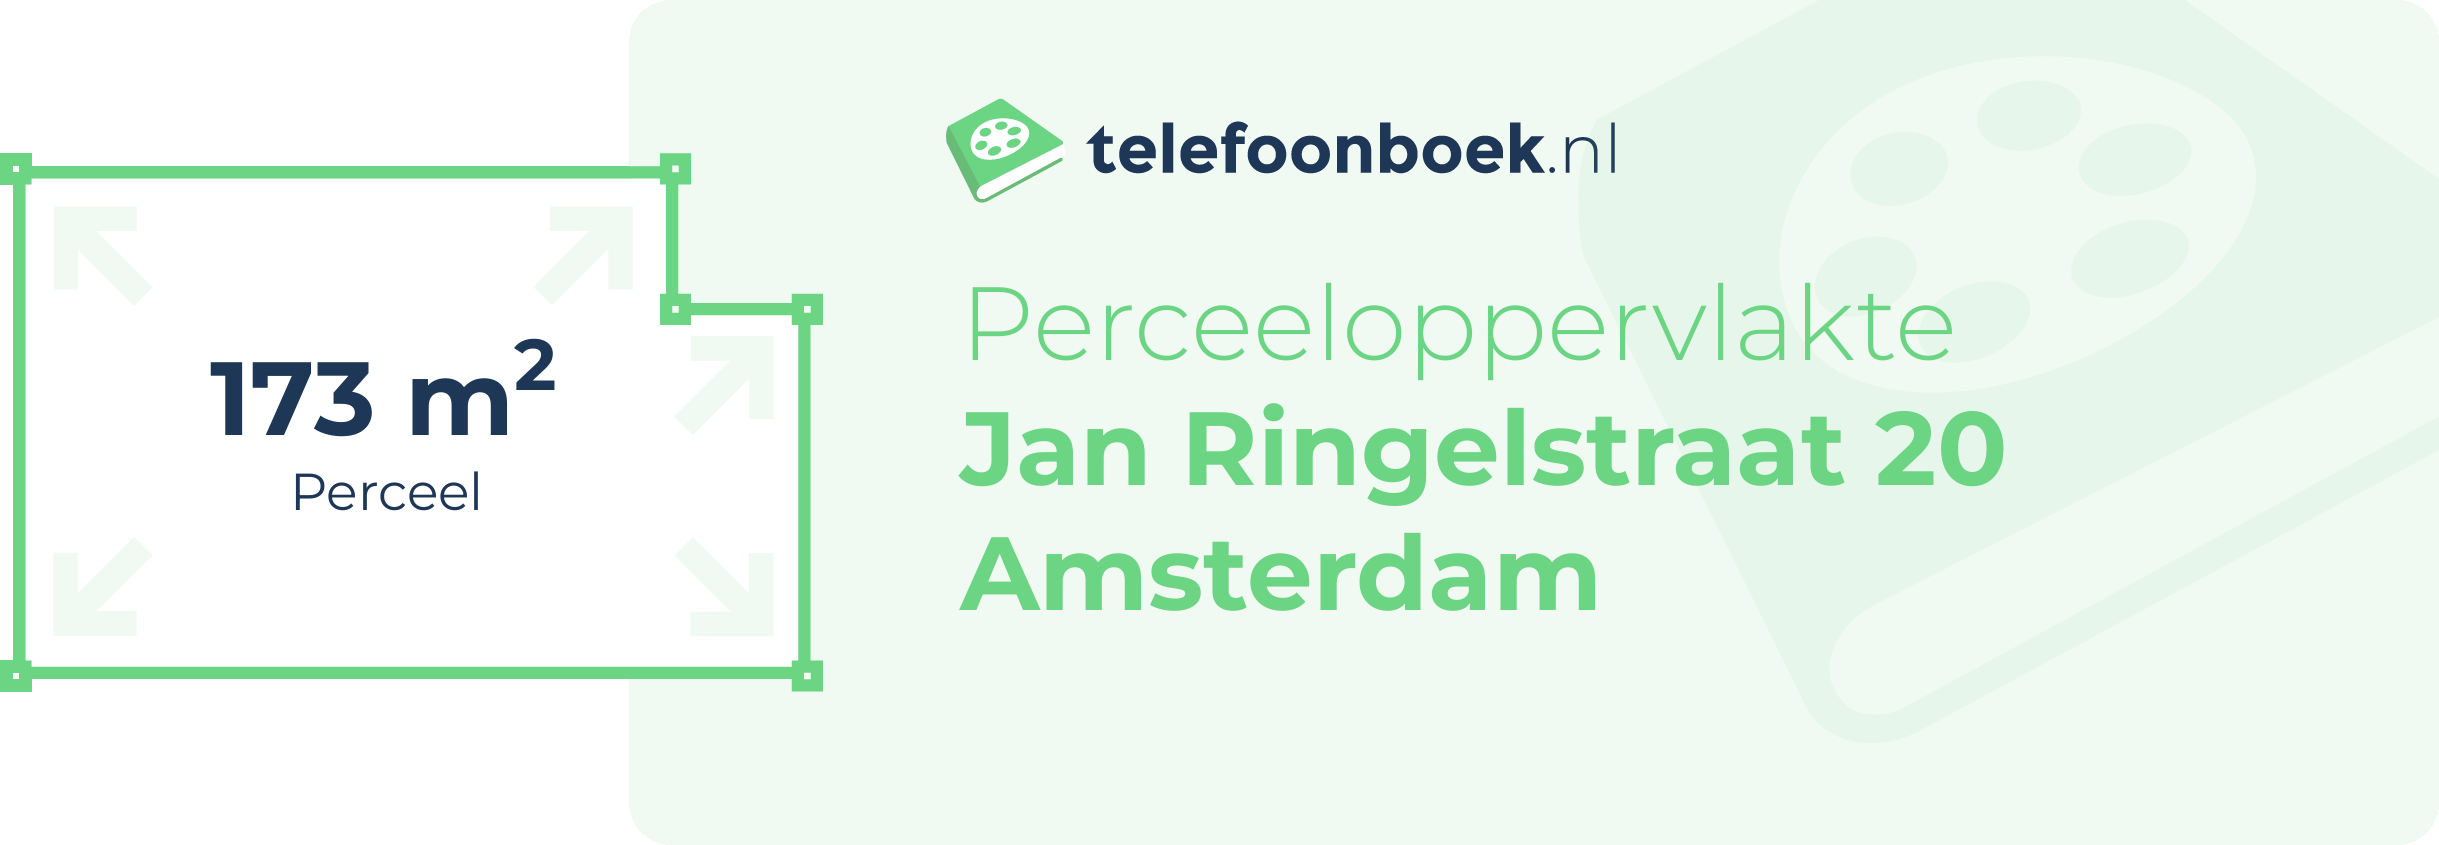 Perceeloppervlakte Jan Ringelstraat 20 Amsterdam